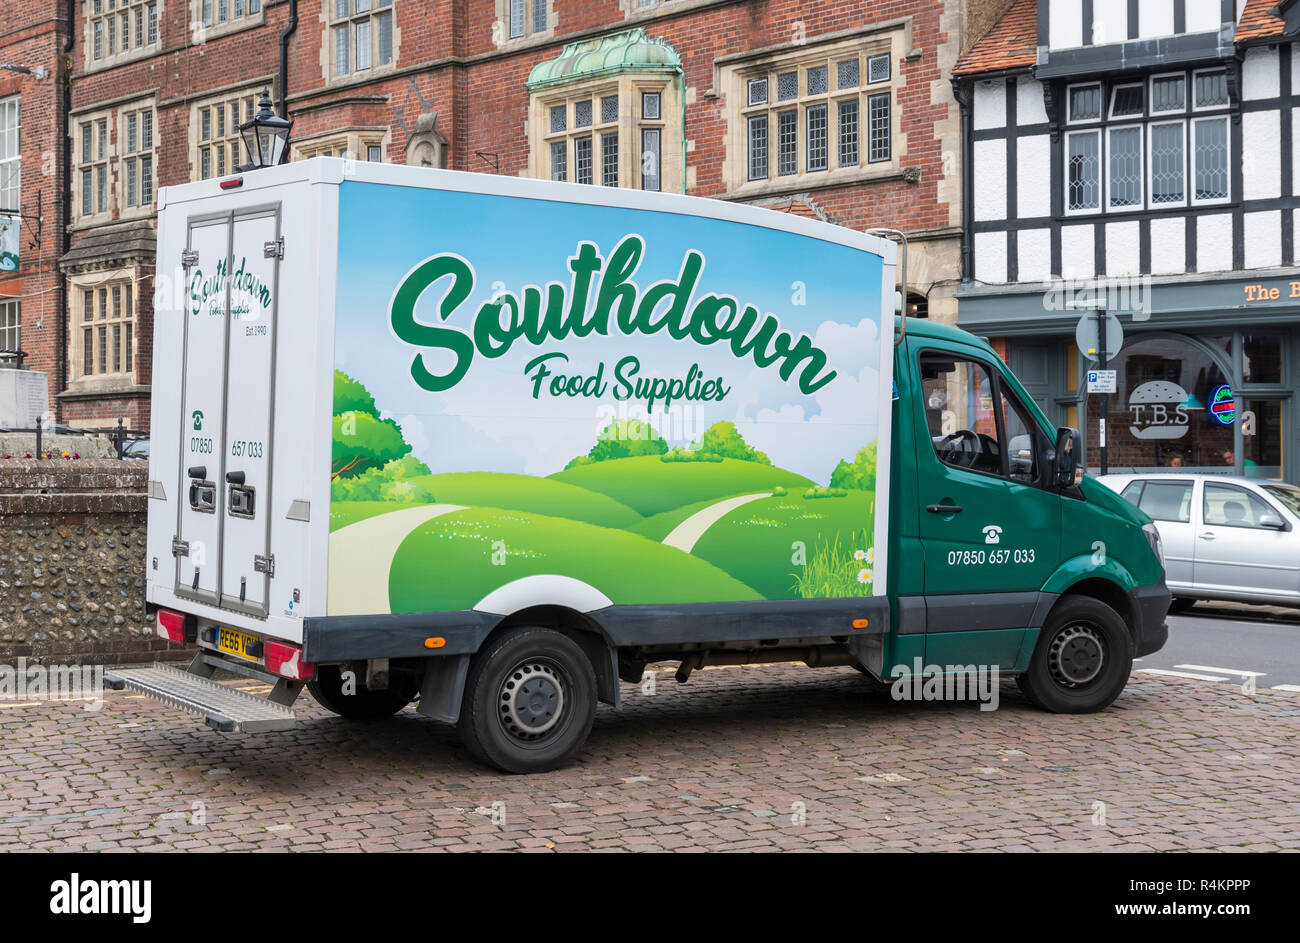 Southdown Essen liefert van in Arundel, West Sussex, England, UK geparkt. Stockfoto